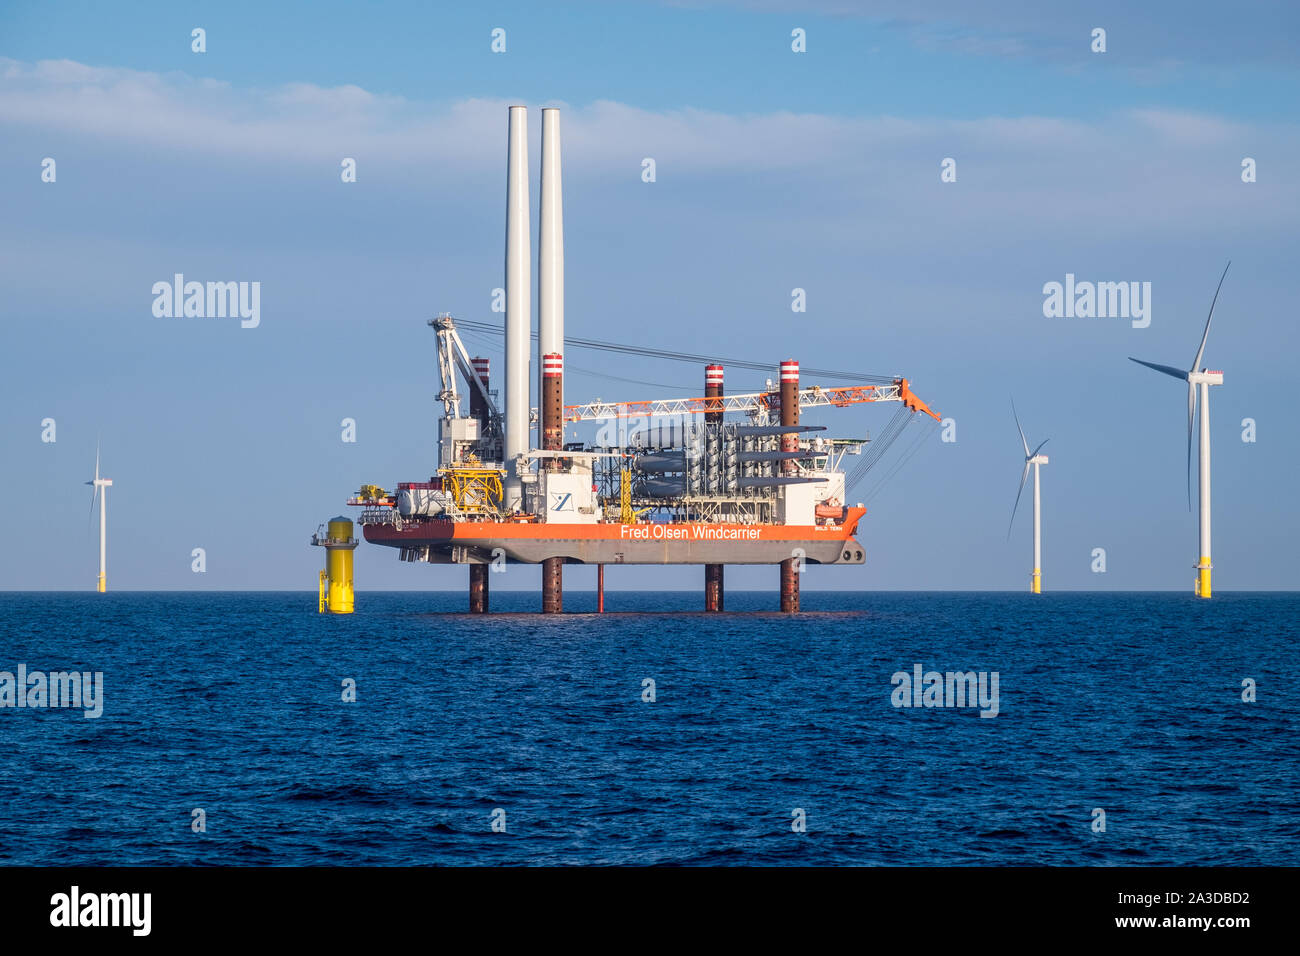 Instalación de una turbina eólica buque, Bold Tern, trabajando sobre levantar aerogeneradores de Siemens en Hornsea Proyecto una granja eólica marina Foto de stock